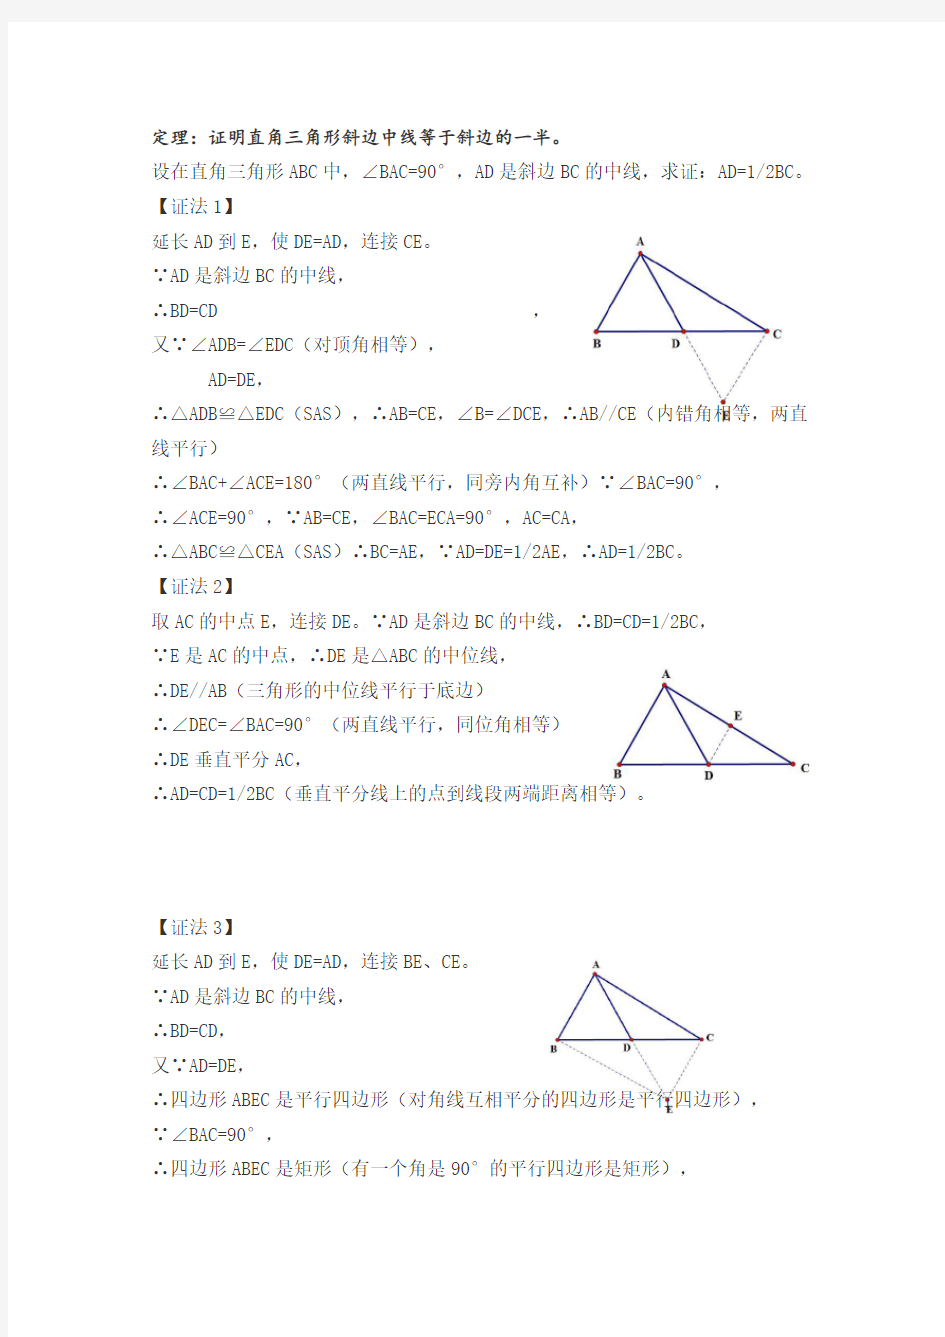 定理证明直角三角形斜边上的中线等于斜边的一半